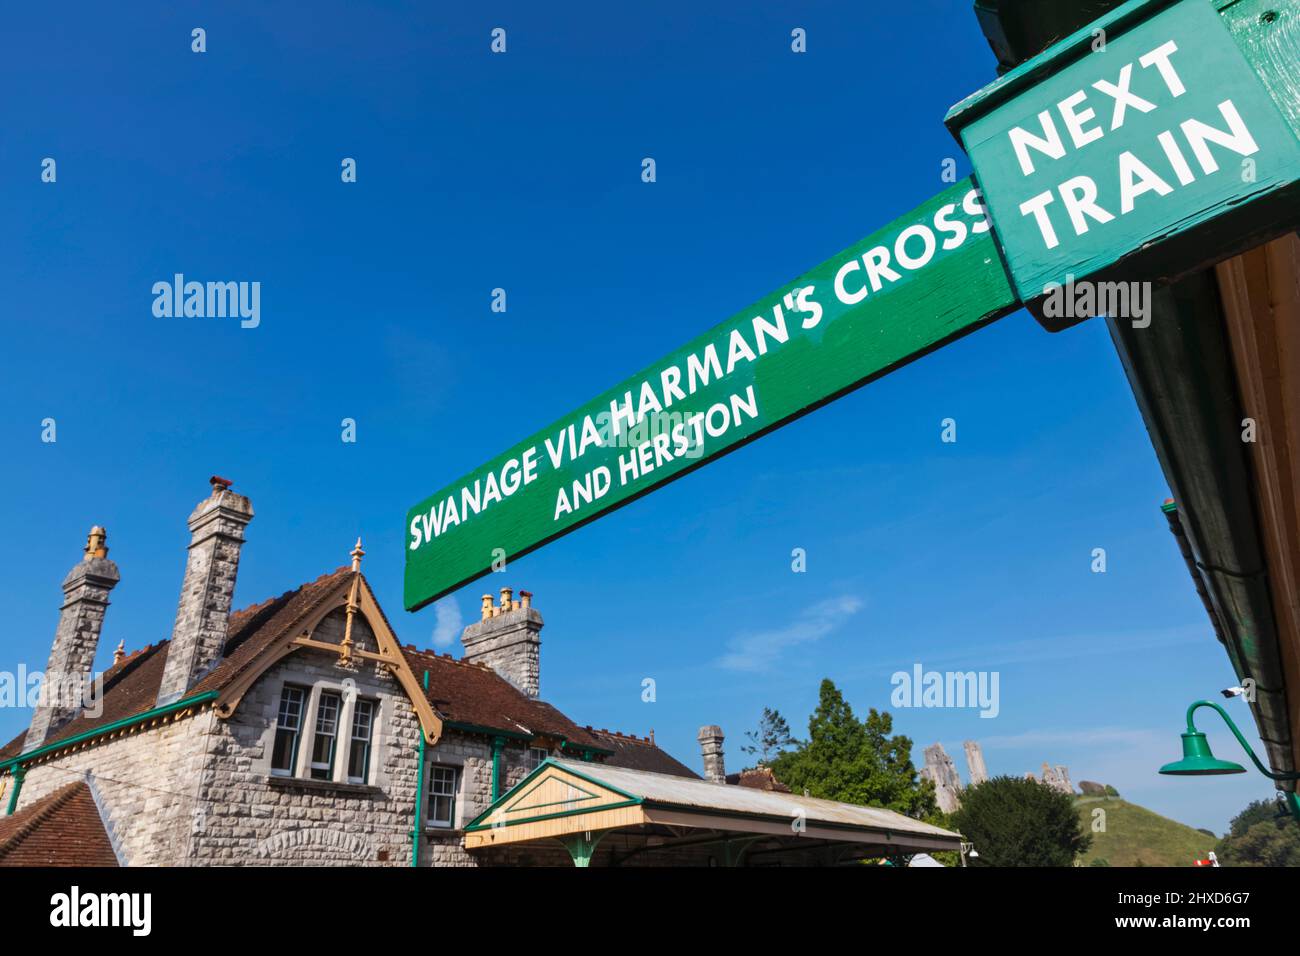 Angleterre, Dorset, île de Purbeck, Château de Corfe, la gare ferroviaire historique, panneau historique Banque D'Images